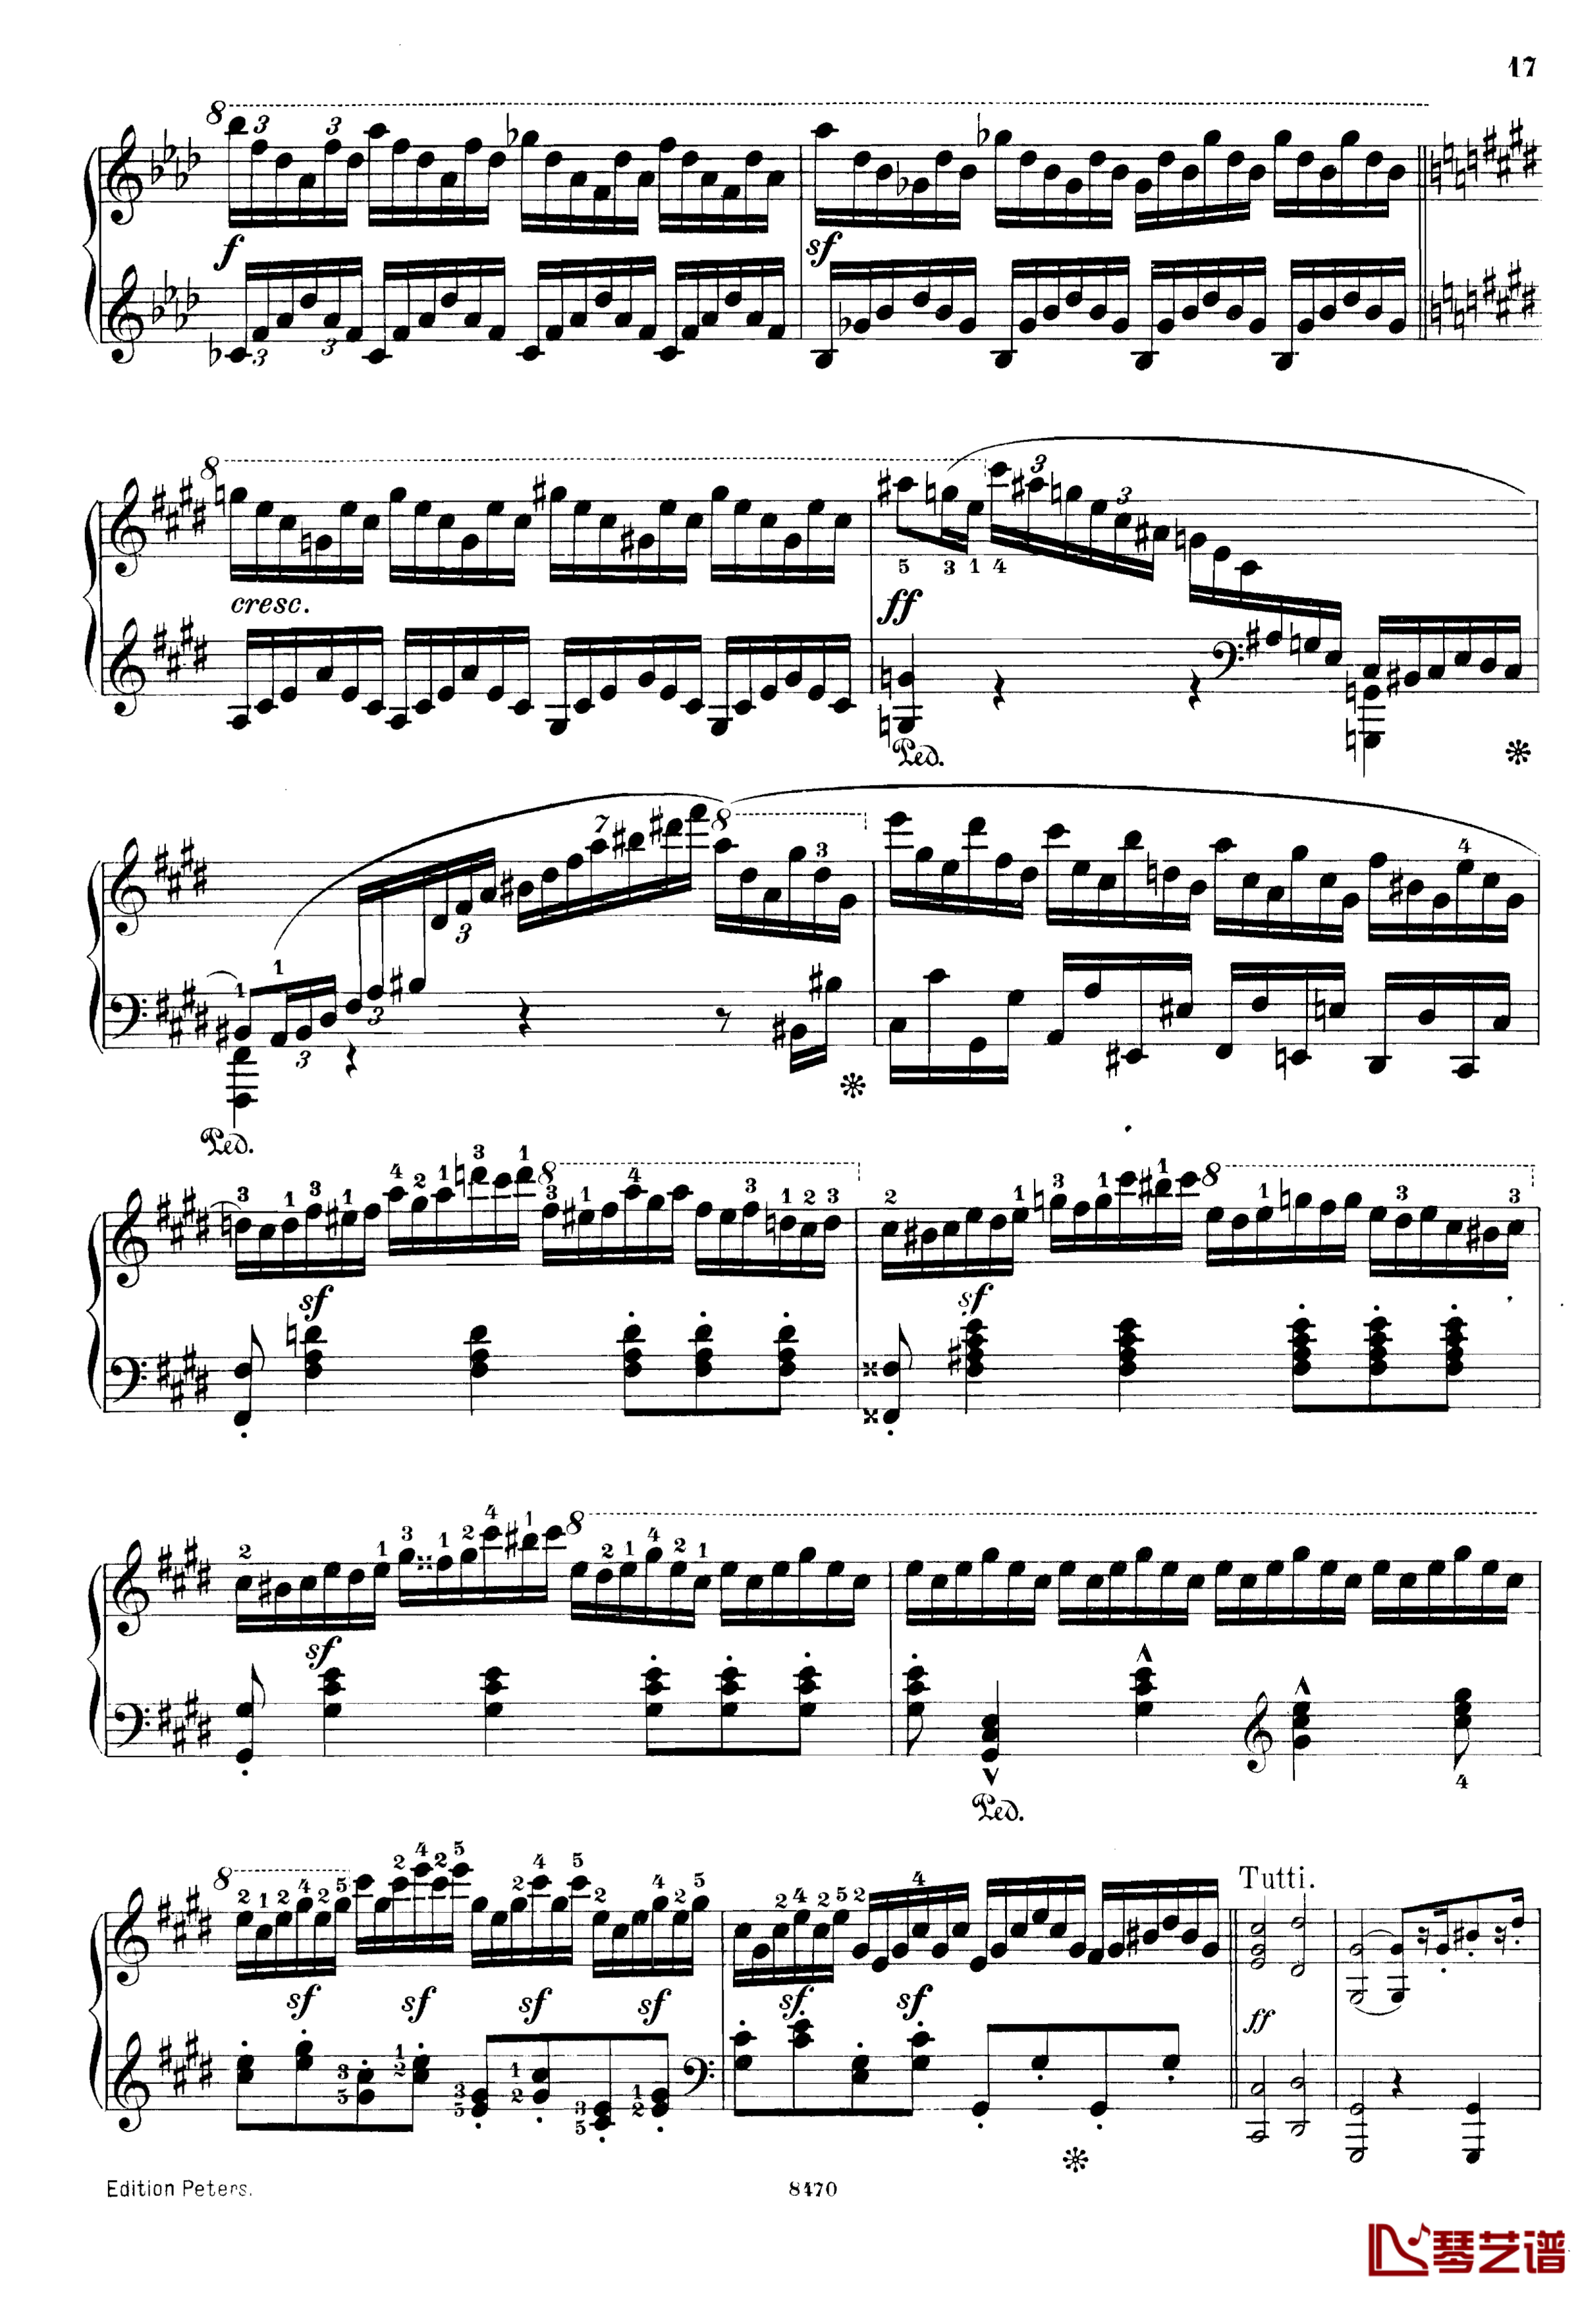 升c小调第三钢琴协奏曲Op.55钢琴谱-克里斯蒂安-里斯17